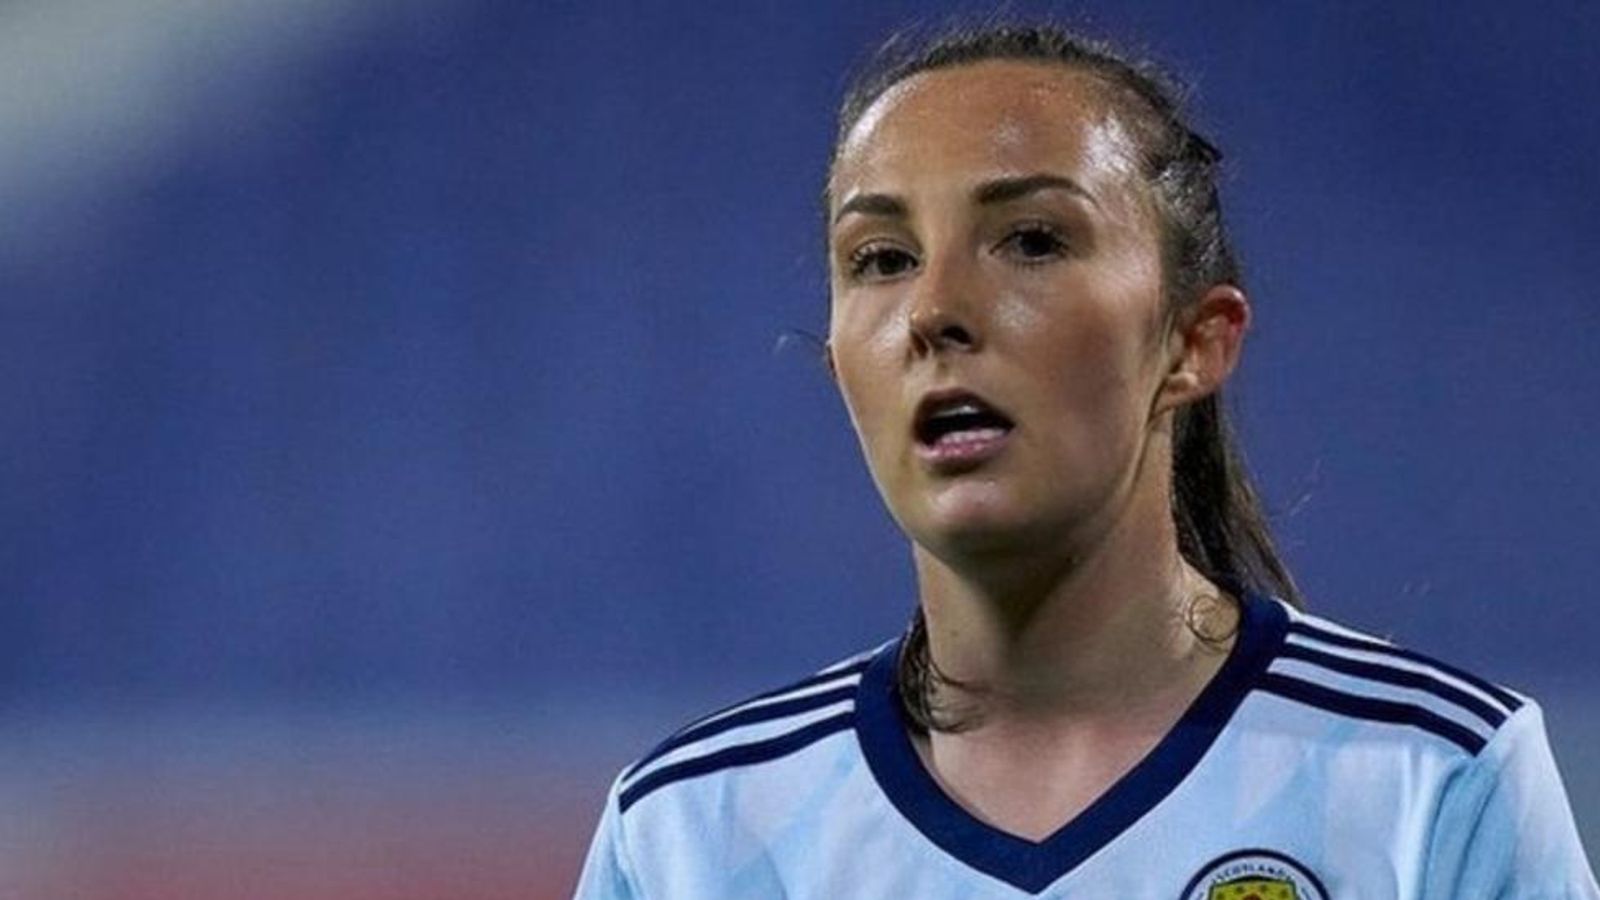 Η Σκωτία κέρδισε την Κύπρο 10-0 στο προκριματικό Euro 2022 γυναικών |  Ειδήσεις ποδοσφαίρου